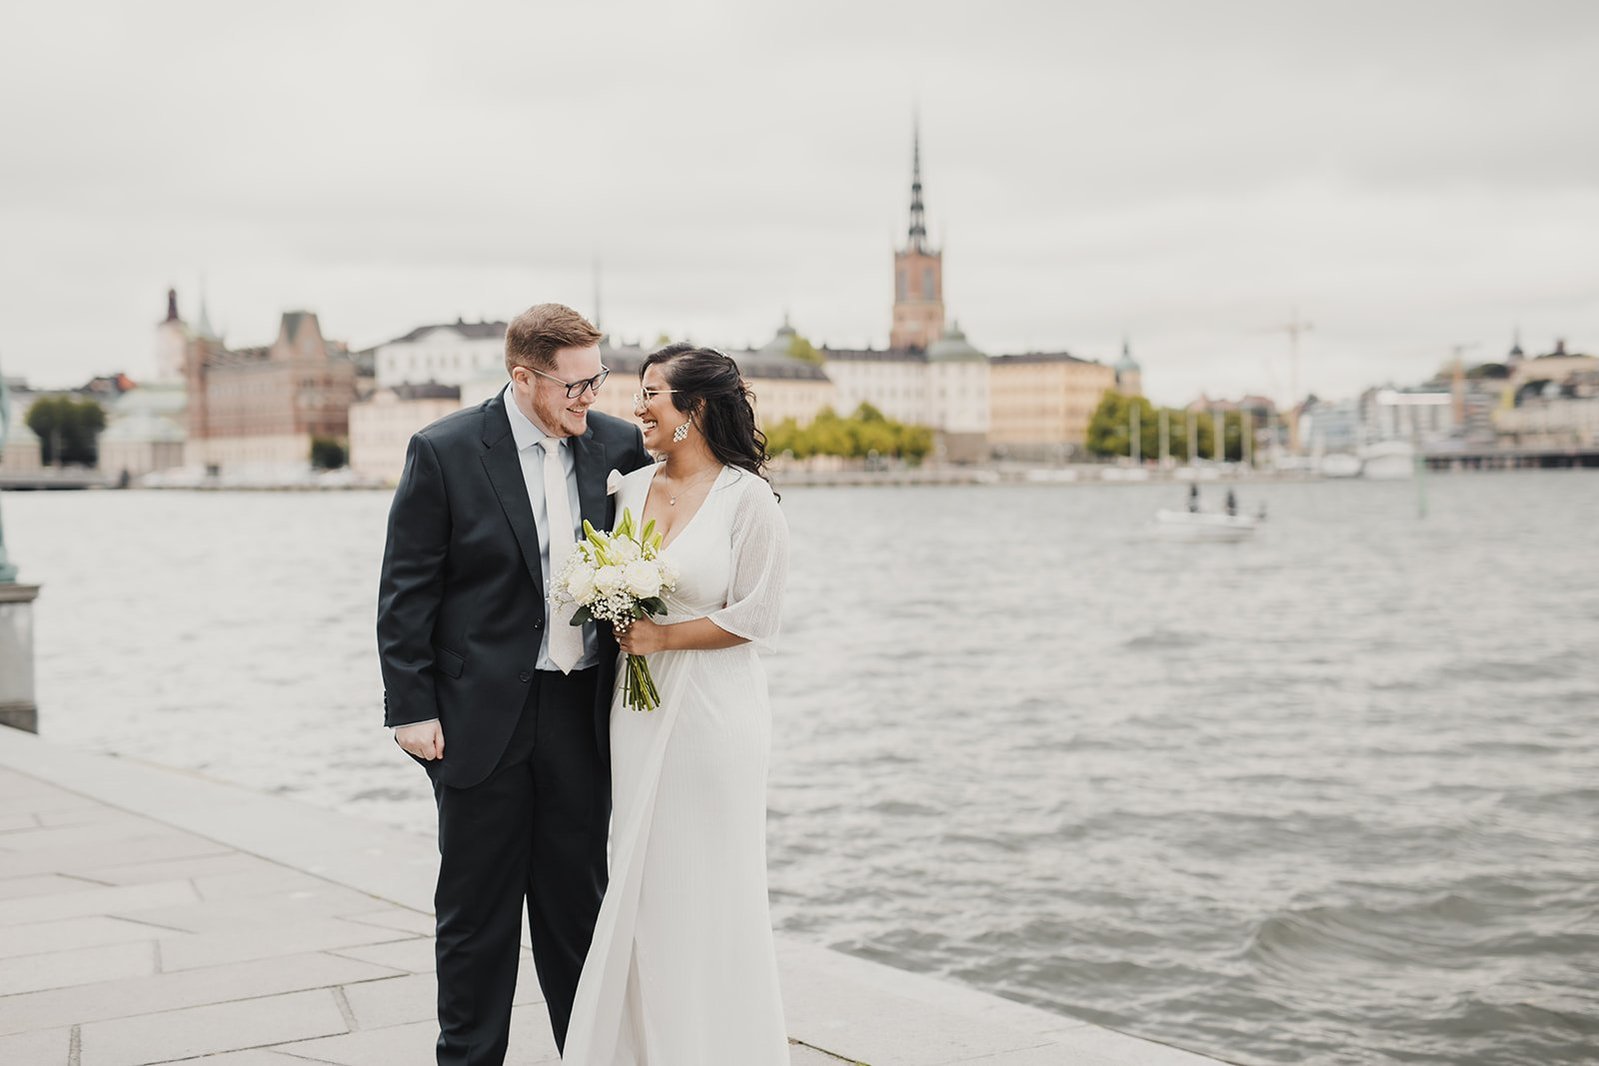 Bröllopspar tätt tillammans utanför Stockholms stadshus. Han i blå kostym och hon i vit klänning och brudbukett i handen. I bakgrunden vattnet och ön Riddarholmen.